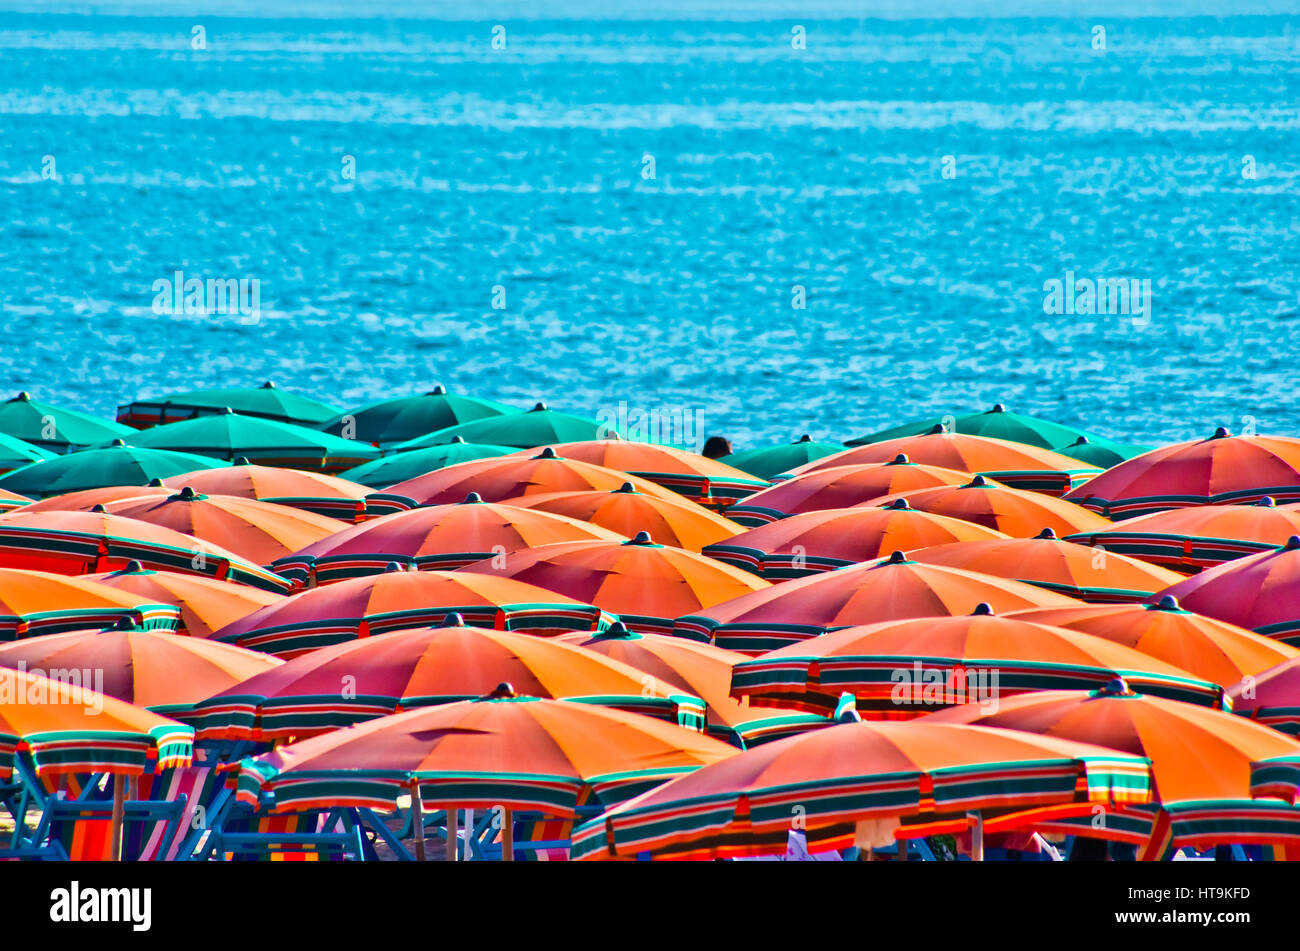 Paraguas naranja en verano con el azul del mar en el fondo Foto de stock